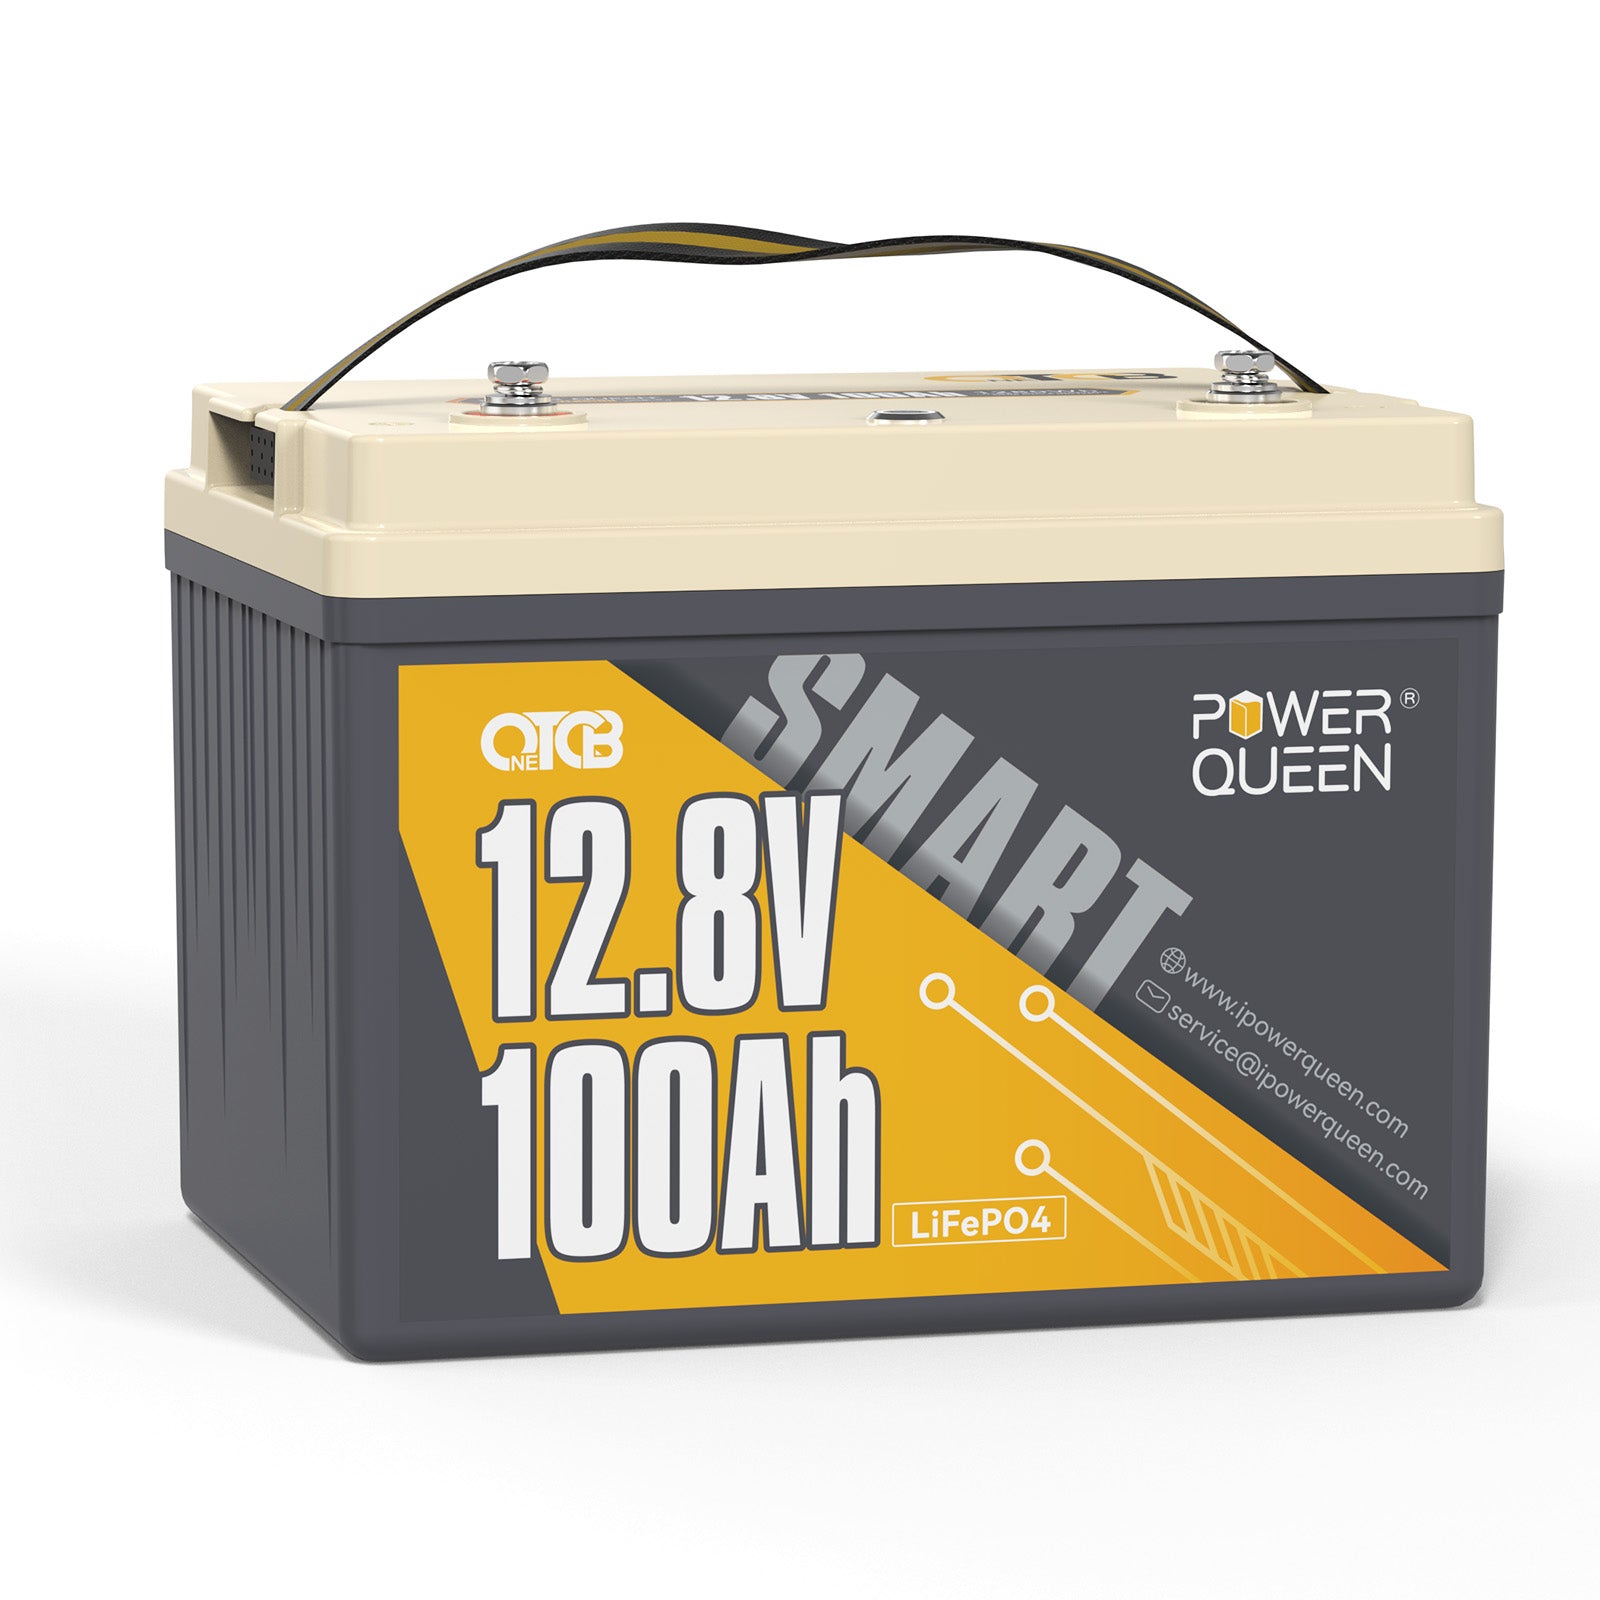 【0% IVA】Batería Power Queen 12.8V 100Ah OTCB Smart LiFePO4, BMS 100A incorporado